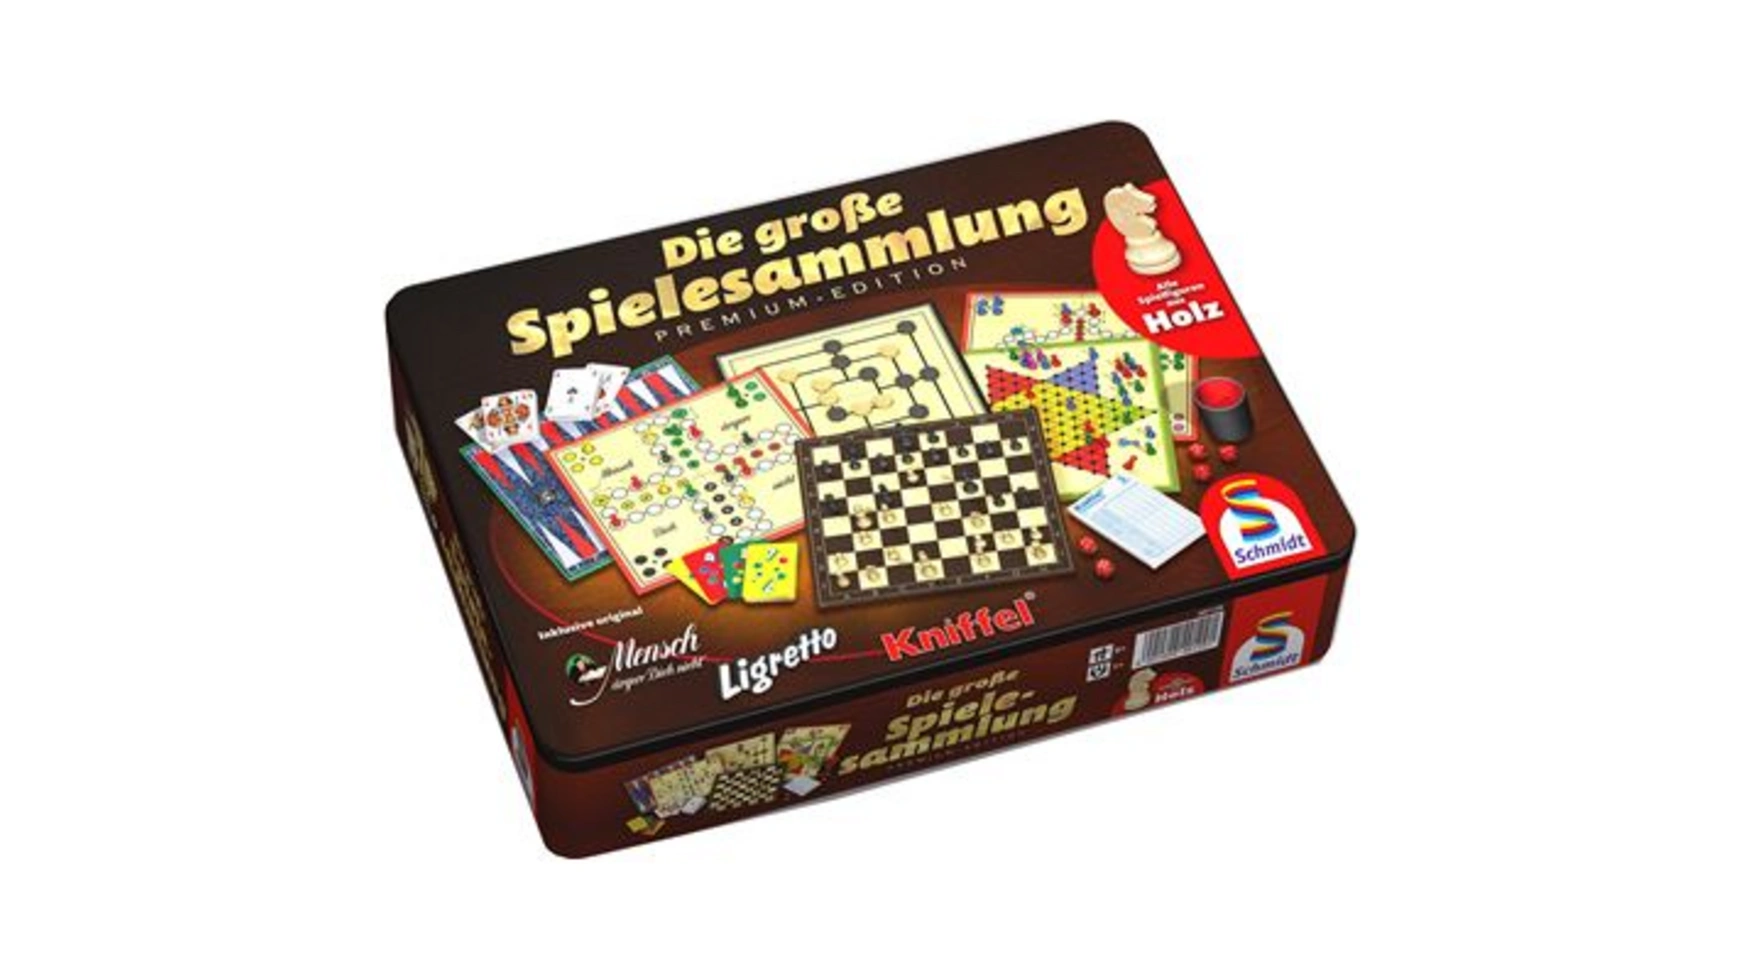 Schmidt Spiele Коллекции игр Большая коллекция игр, металлическая коробка коллекция деревянных игр travel 3104 philos spiele